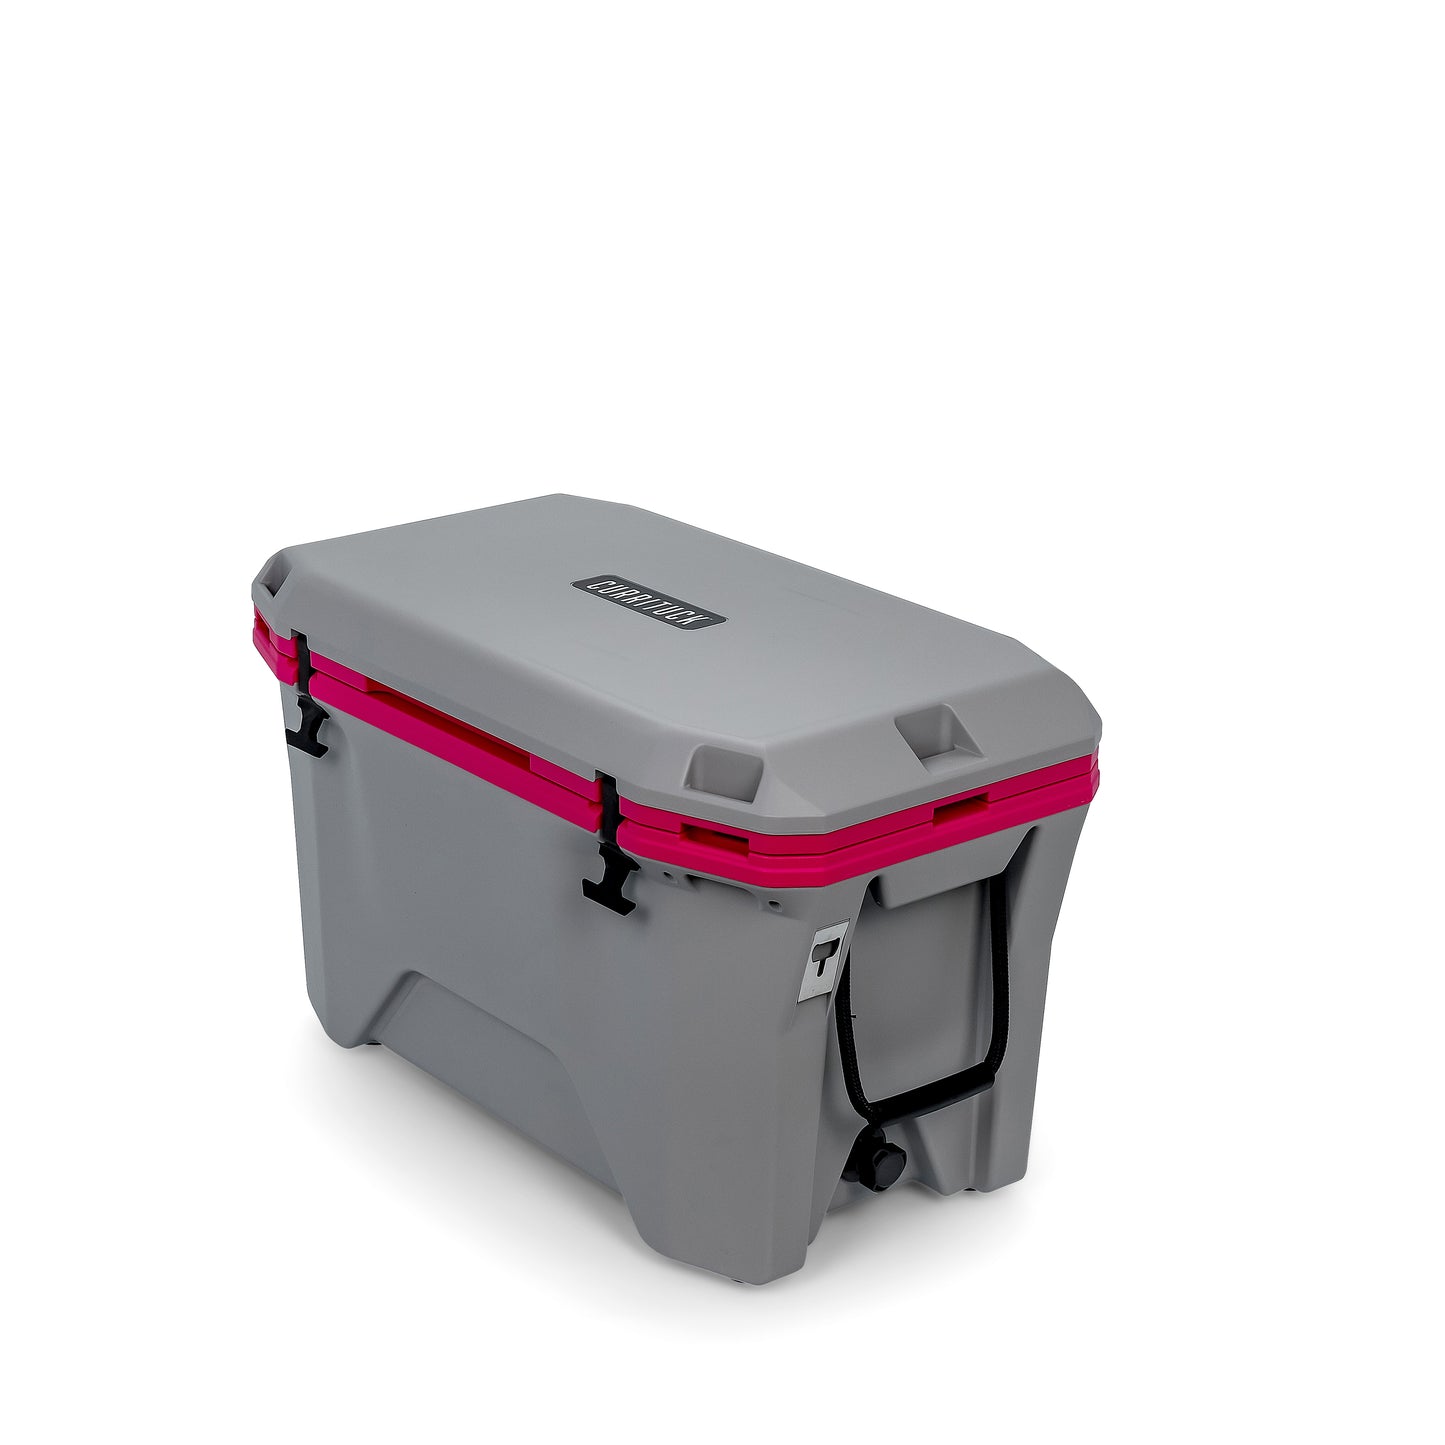 Currituck 30 Quart Premium Coolers - Gray & Pink